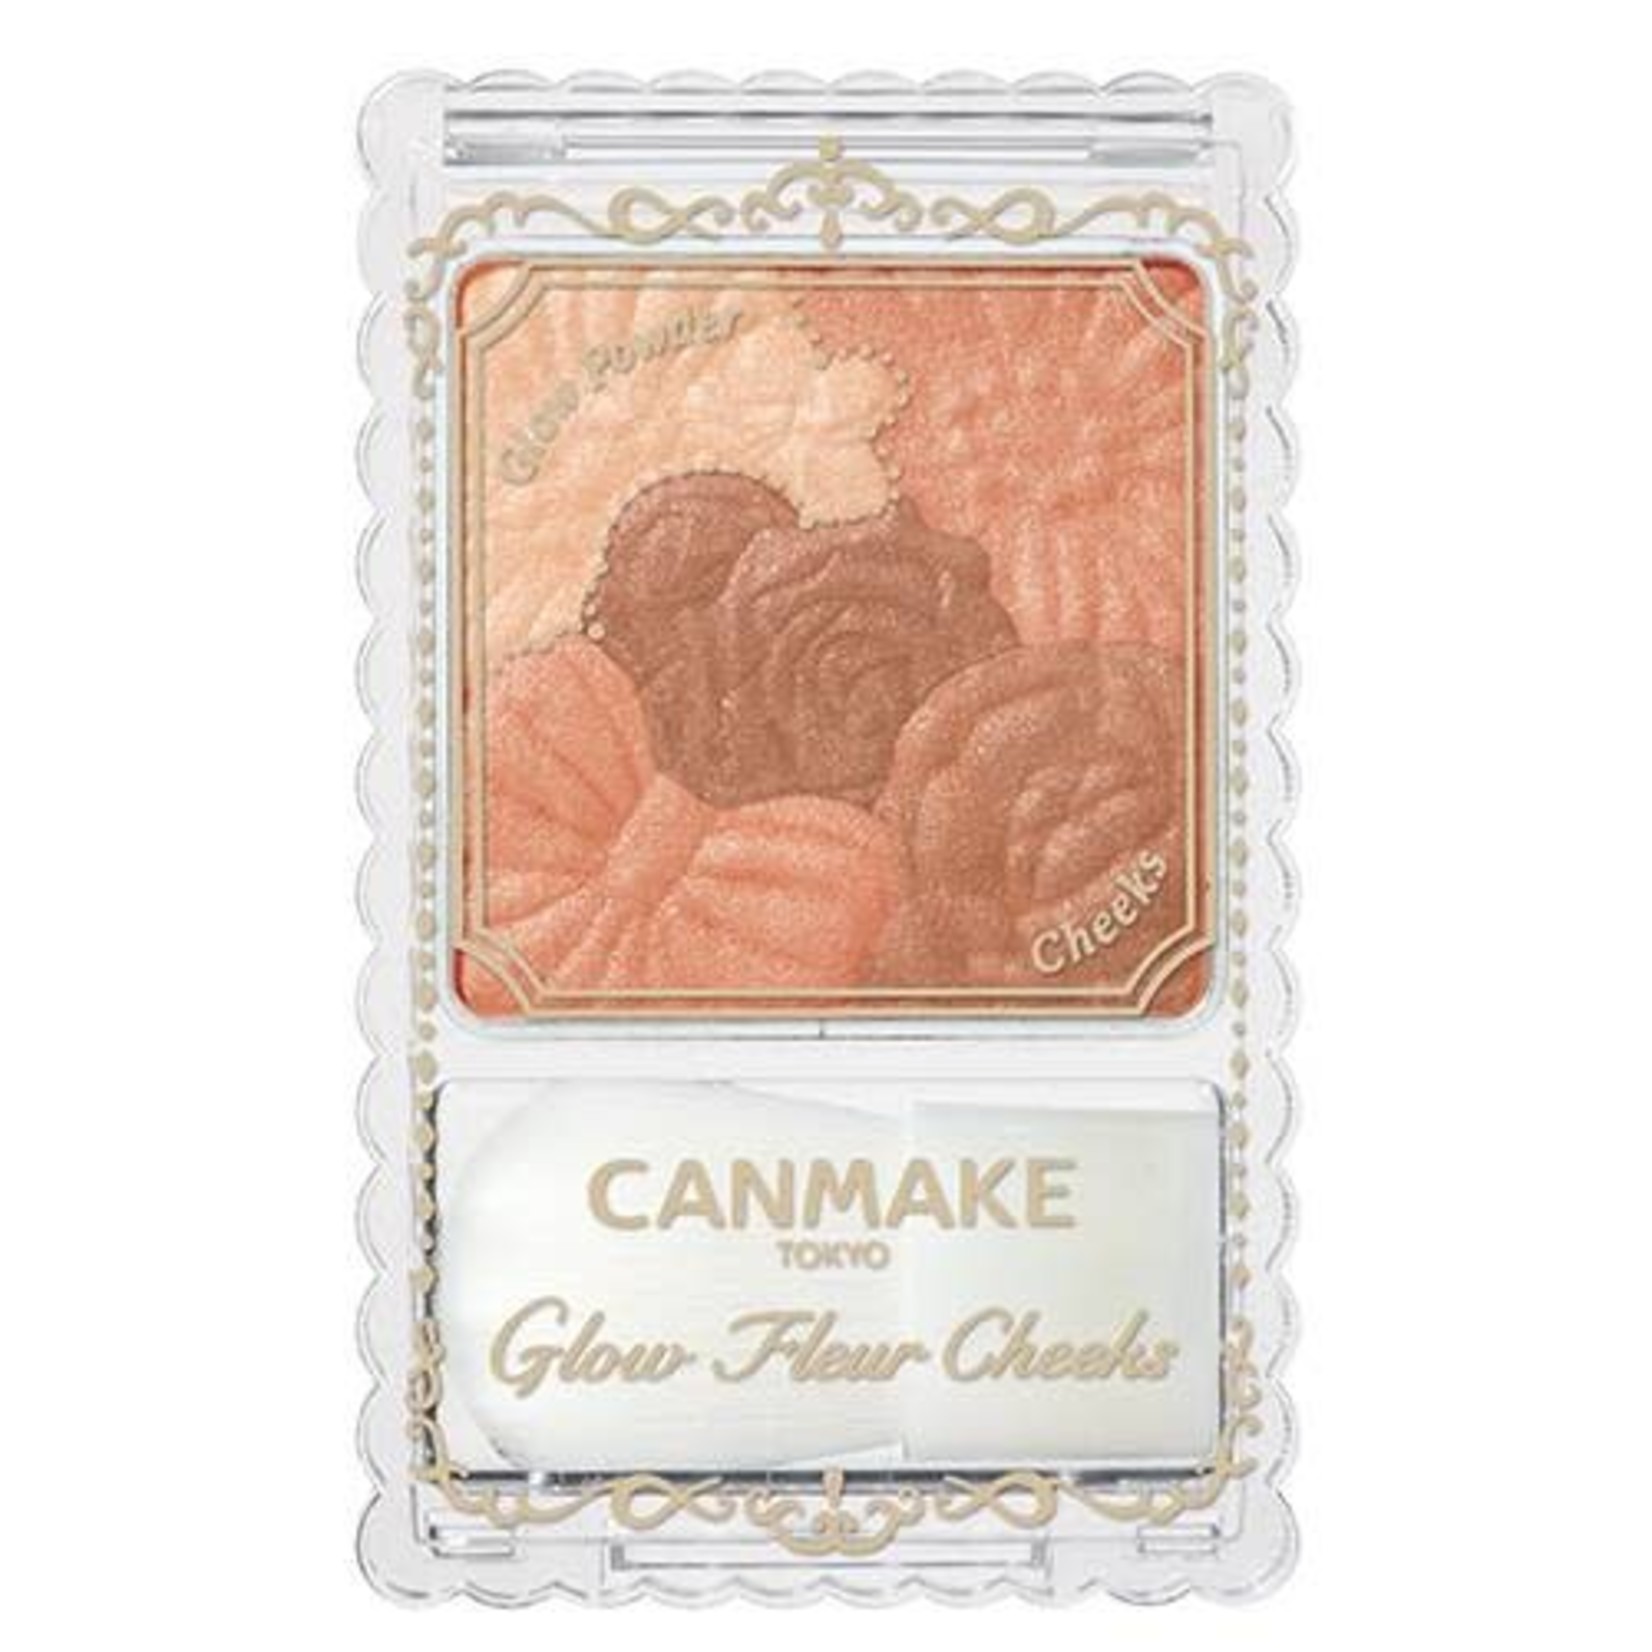 Canmake Canmake Glow Fleur Cheeks 12 Cinnamon Latte Fleur